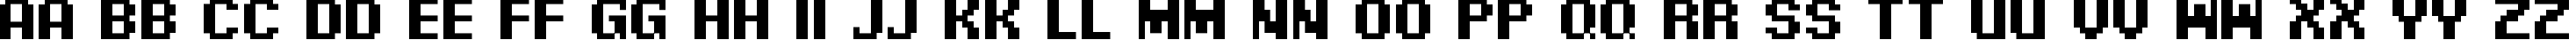 Пример написания английского алфавита шрифтом Pixel Digivolve